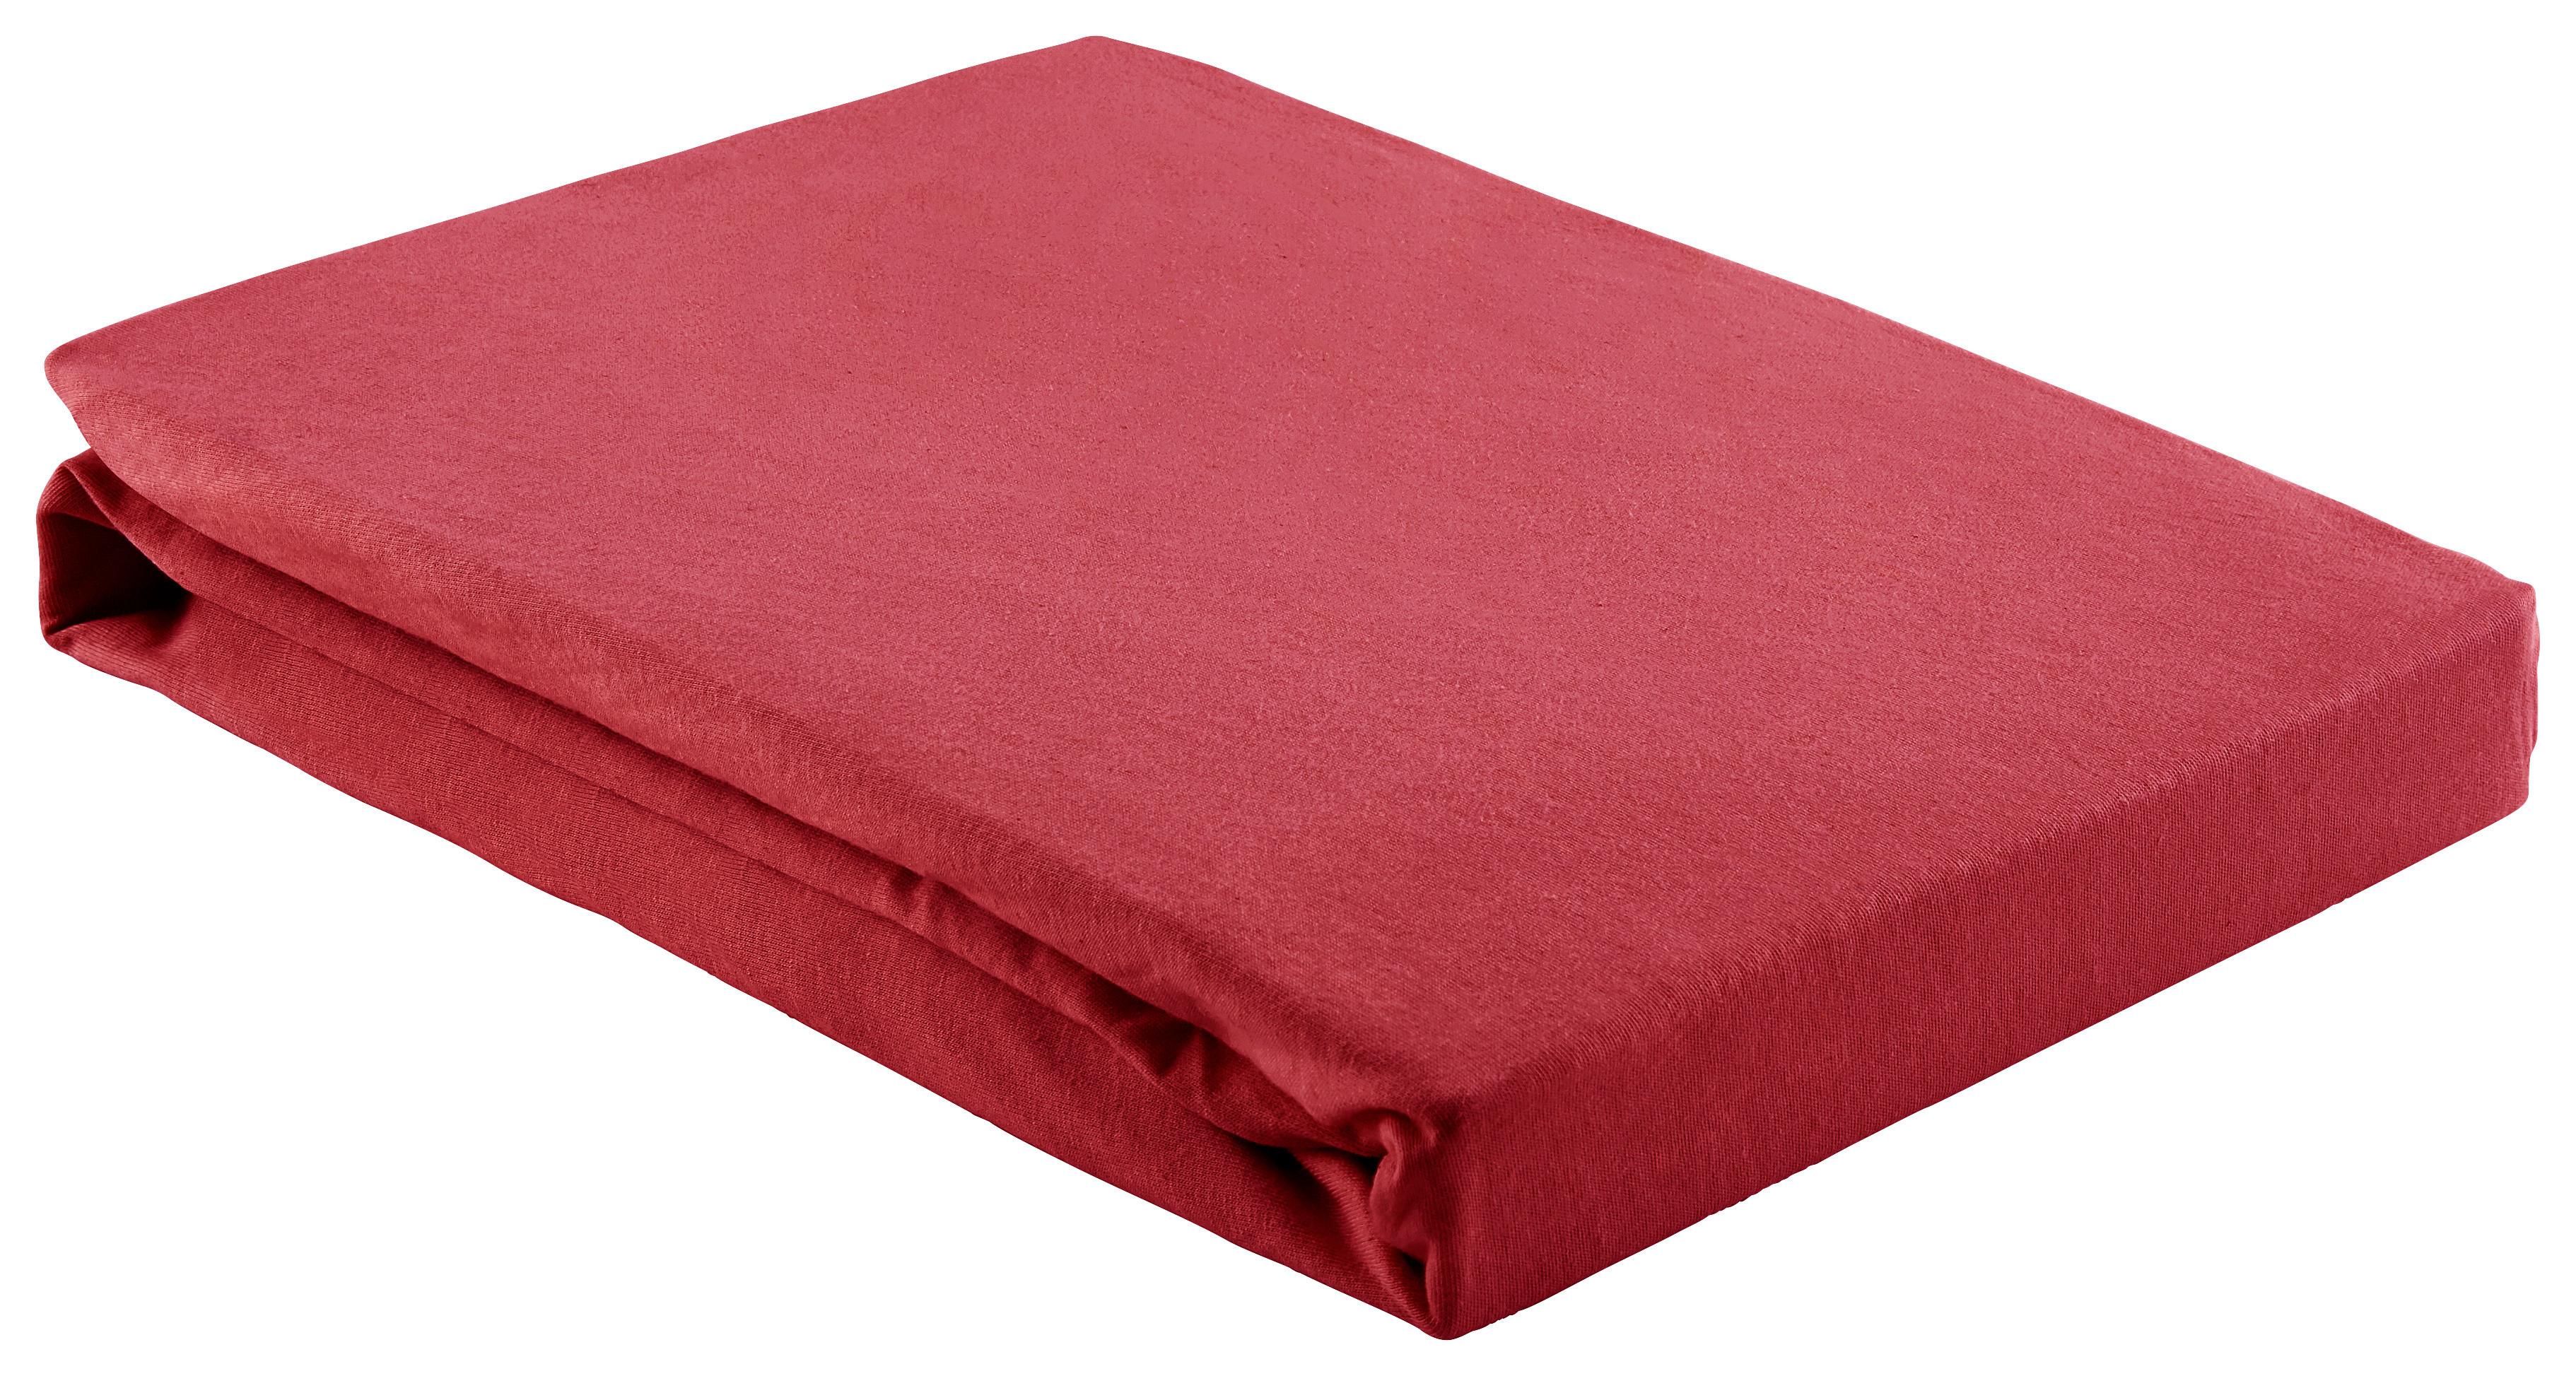 Elastické Prostěradlo Basic, 150/200cm, Červená - červená, textil (150/200cm) - Modern Living